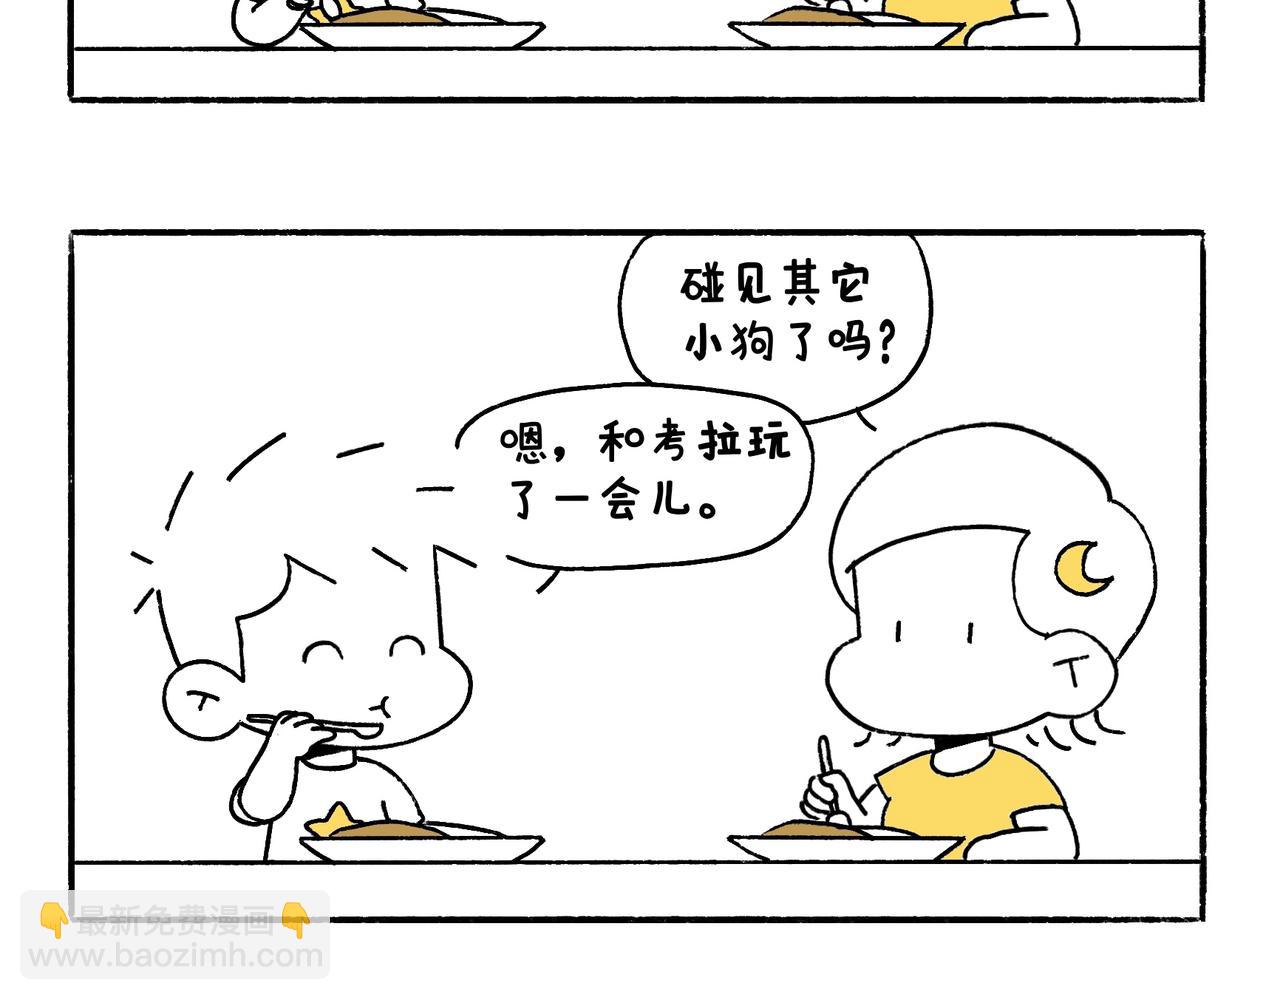 地呱炒土豆 - 出浴即巔峰 - 5